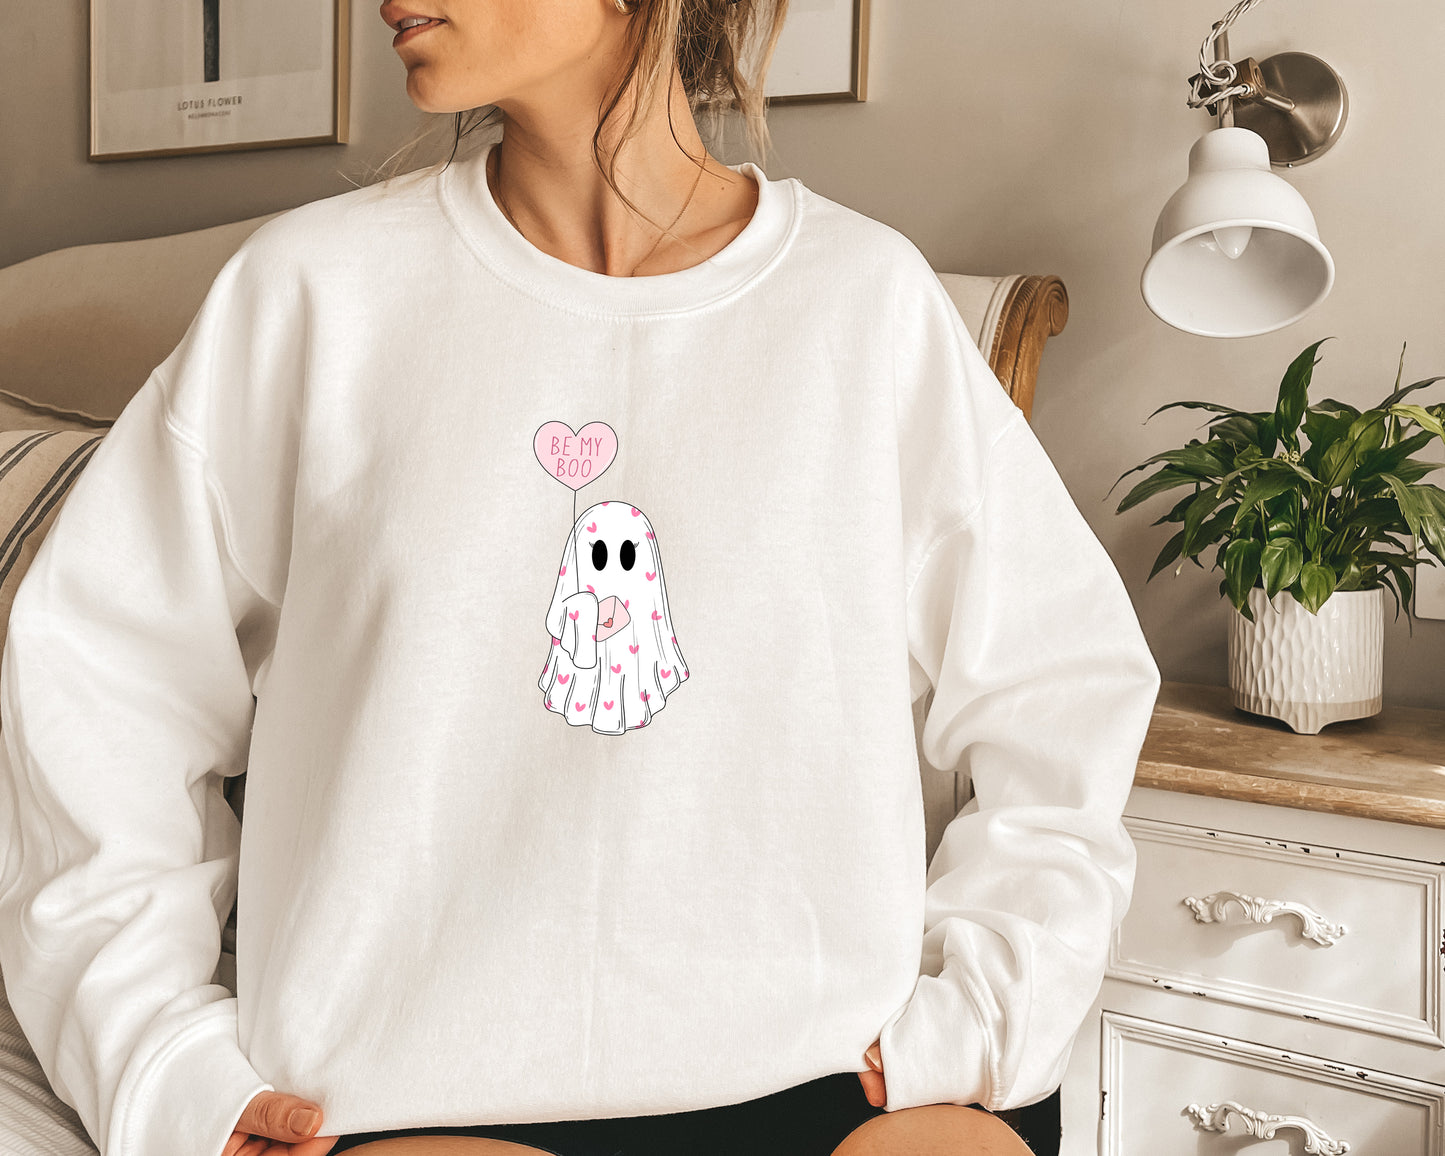 Valentine's Day Sweatshirt /  Be my Boo / Valentines Ghost design sweatshirt crewneck